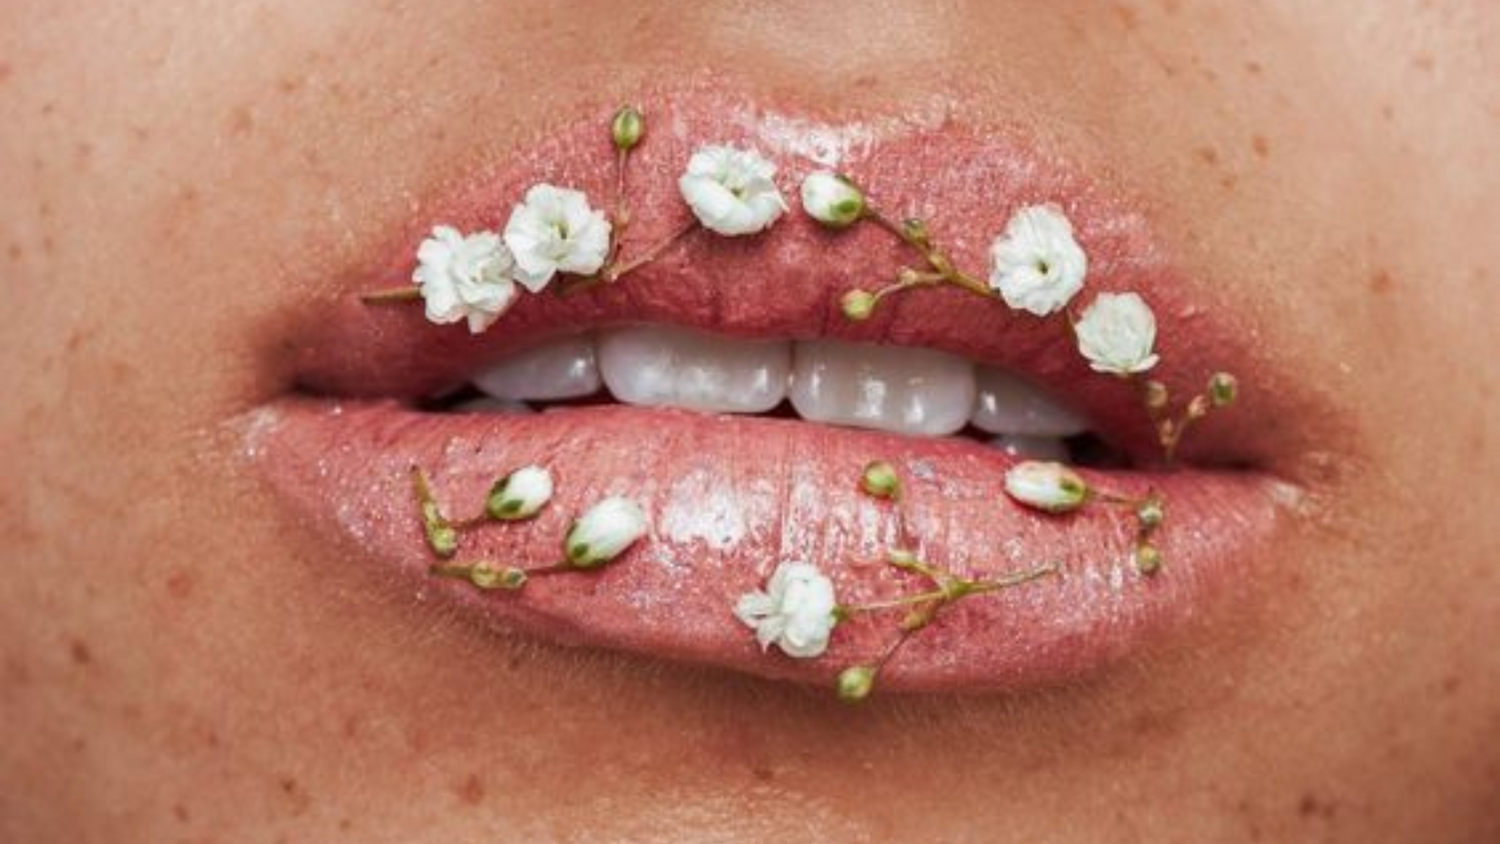 lèvre sur lequelles sont déposées artistiquement de petites fleurs blanches, évoquant la naturalité d'un soin, aussi bien intérieur qu'extérieur